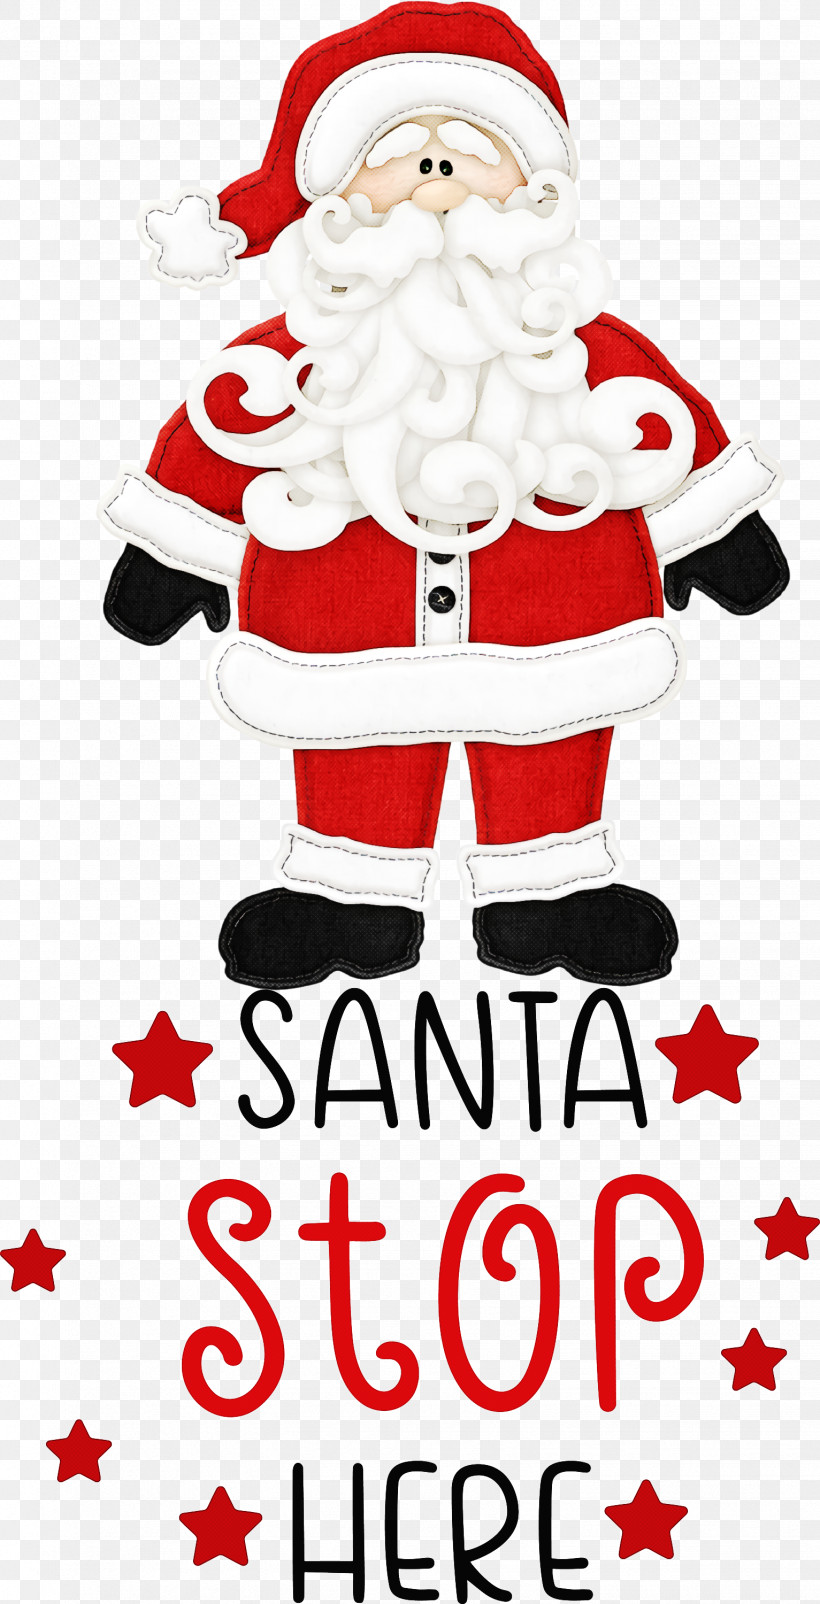 Santa Stop Here Santa Christmas, PNG, 1533x3000px, Santa Stop Here, Christmas, Christmas Day, Christmas Ornament, Christmas Stocking Download Free